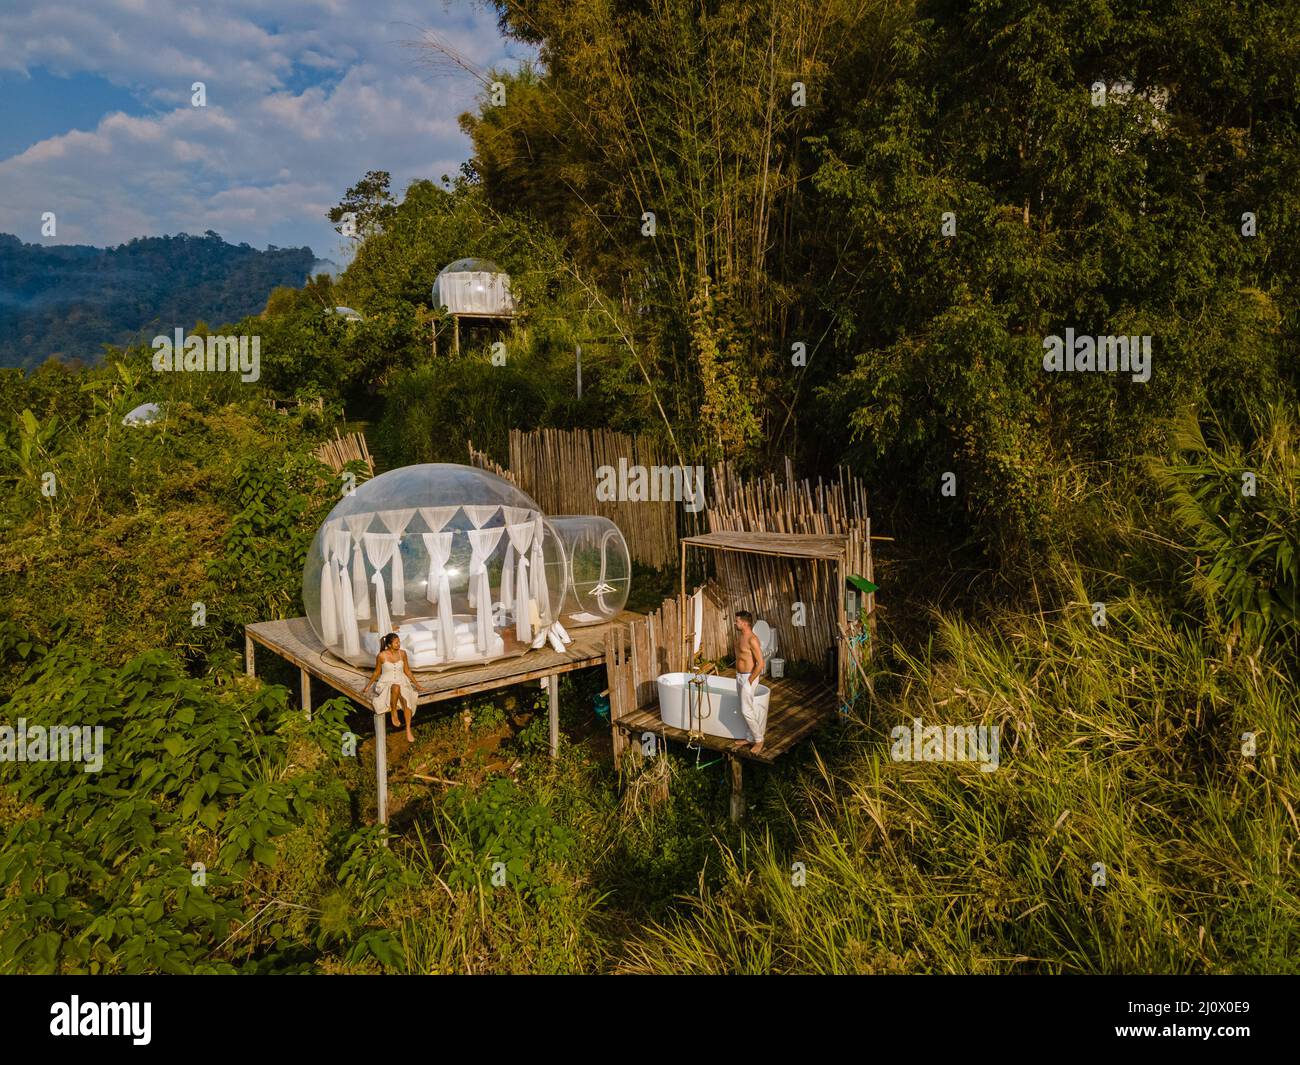 Glamping im Bubble Dome Zelt in den Bergen von Chiang Mai Thailand,  transparentes Glockenzelt mit komfortablem Bett und Kissen in Fores  Stockfotografie - Alamy